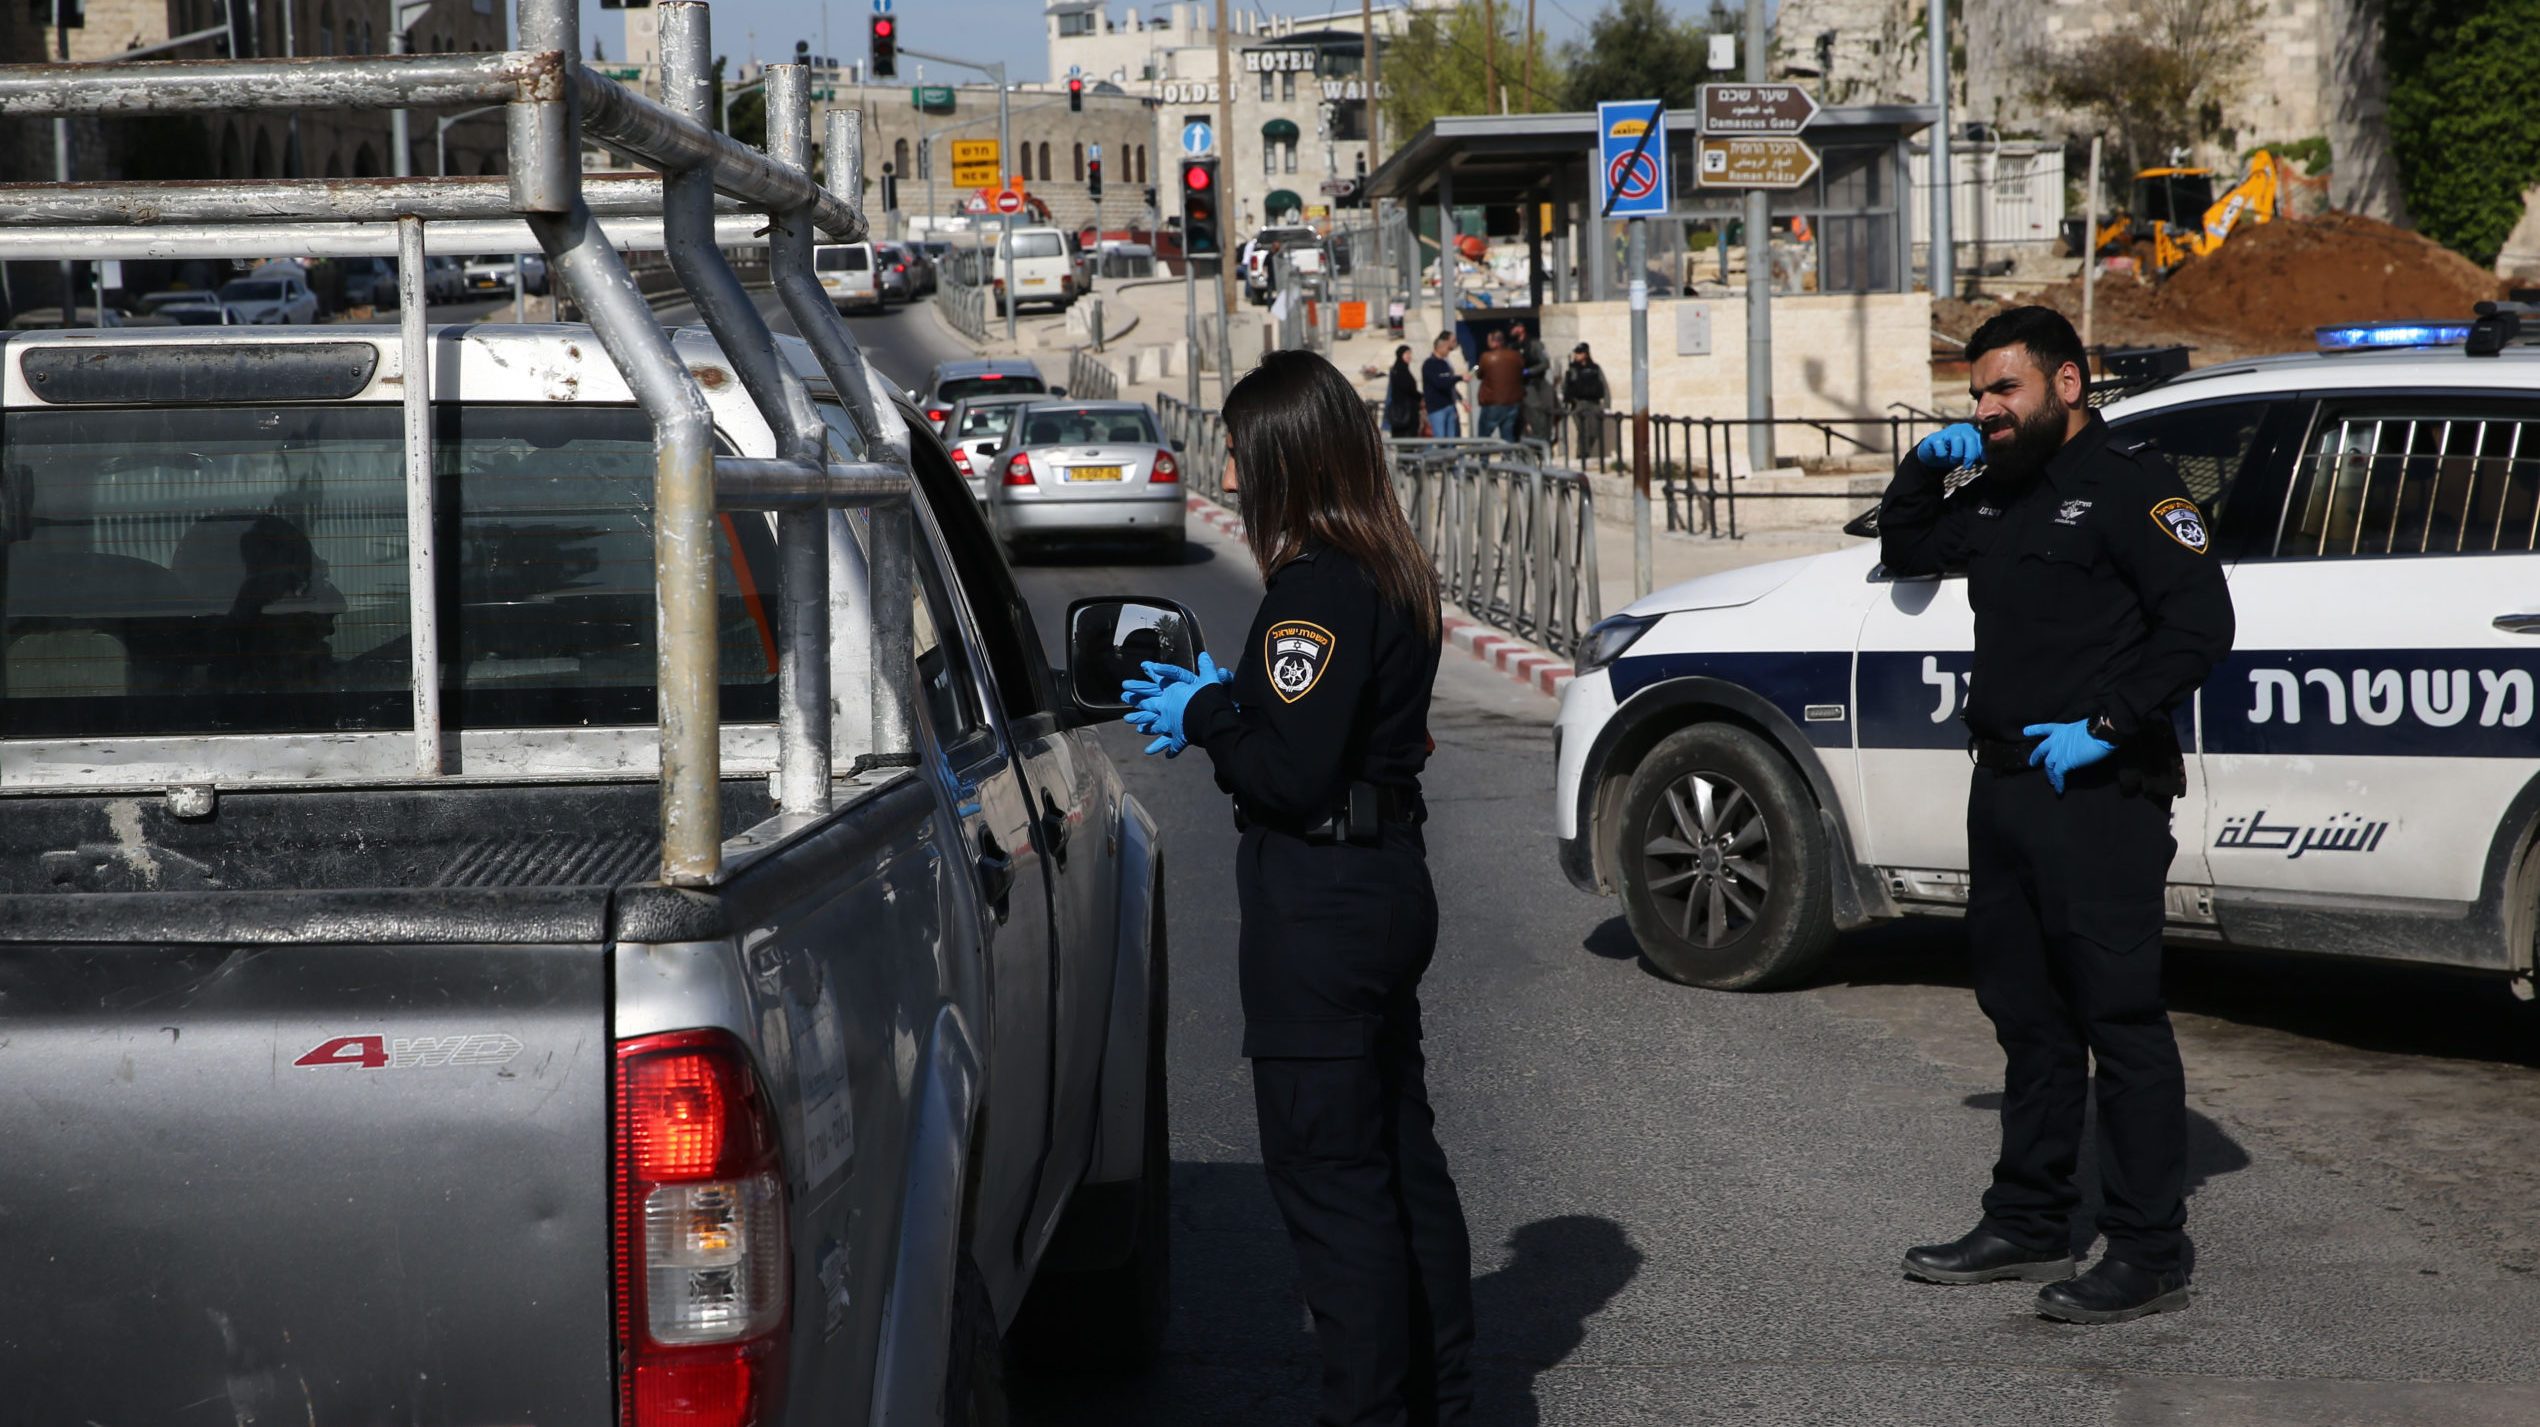 Israeli Military to Help Enforce Lockdown